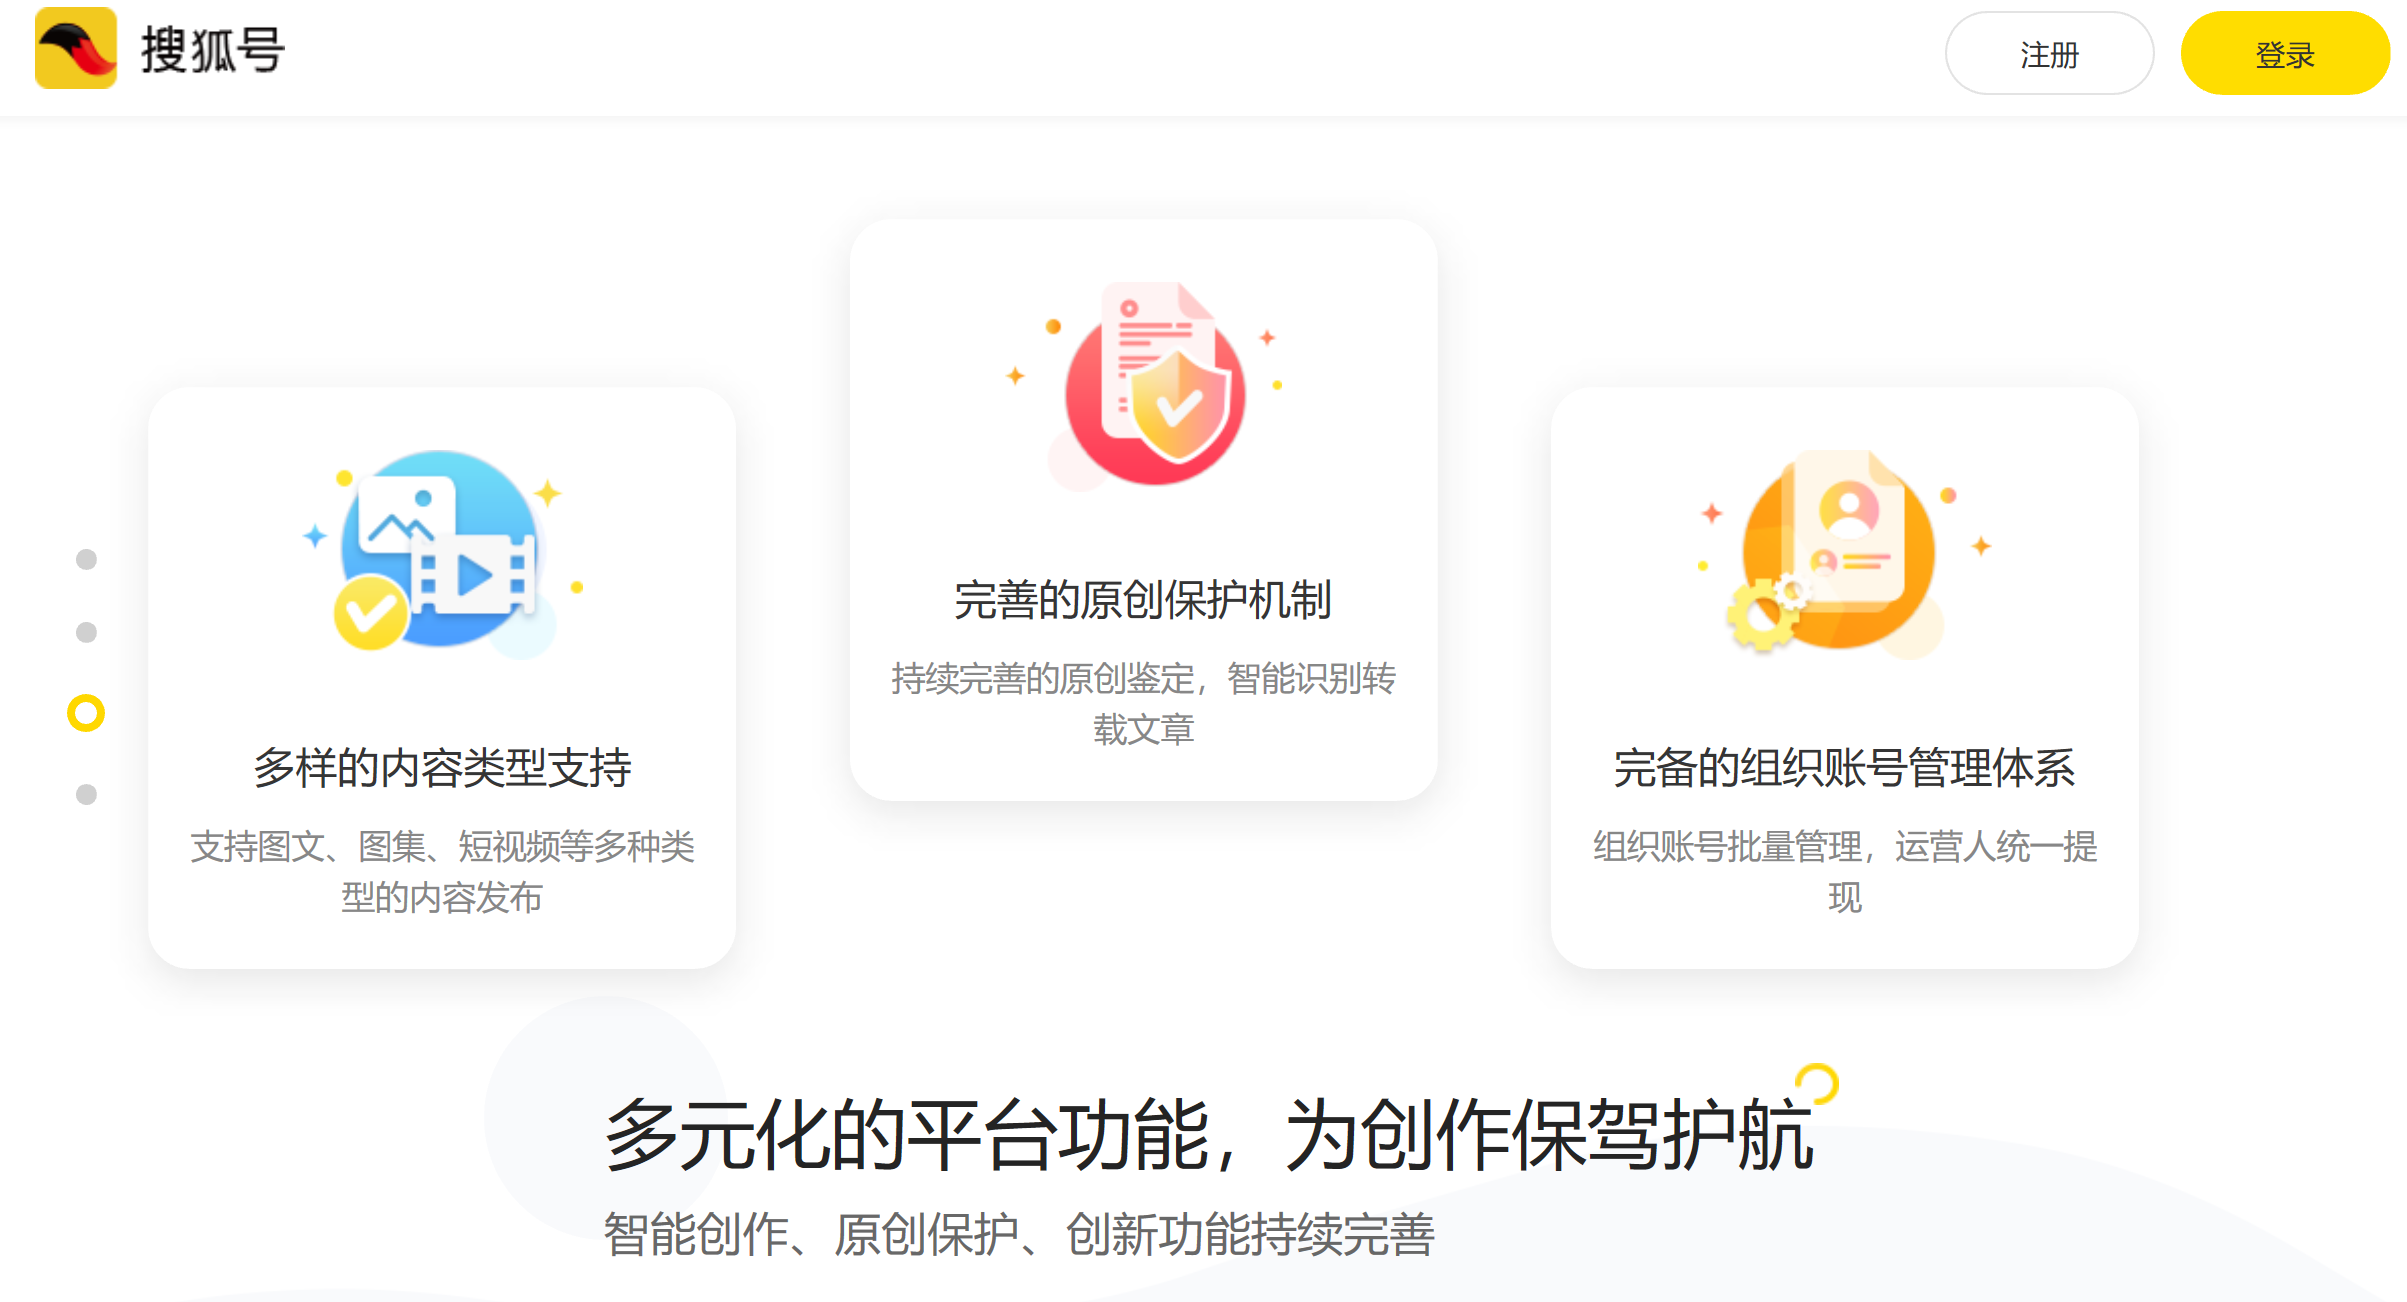 搜狐2019Q4盈利700万美元 营收同比增长5%-锋巢网